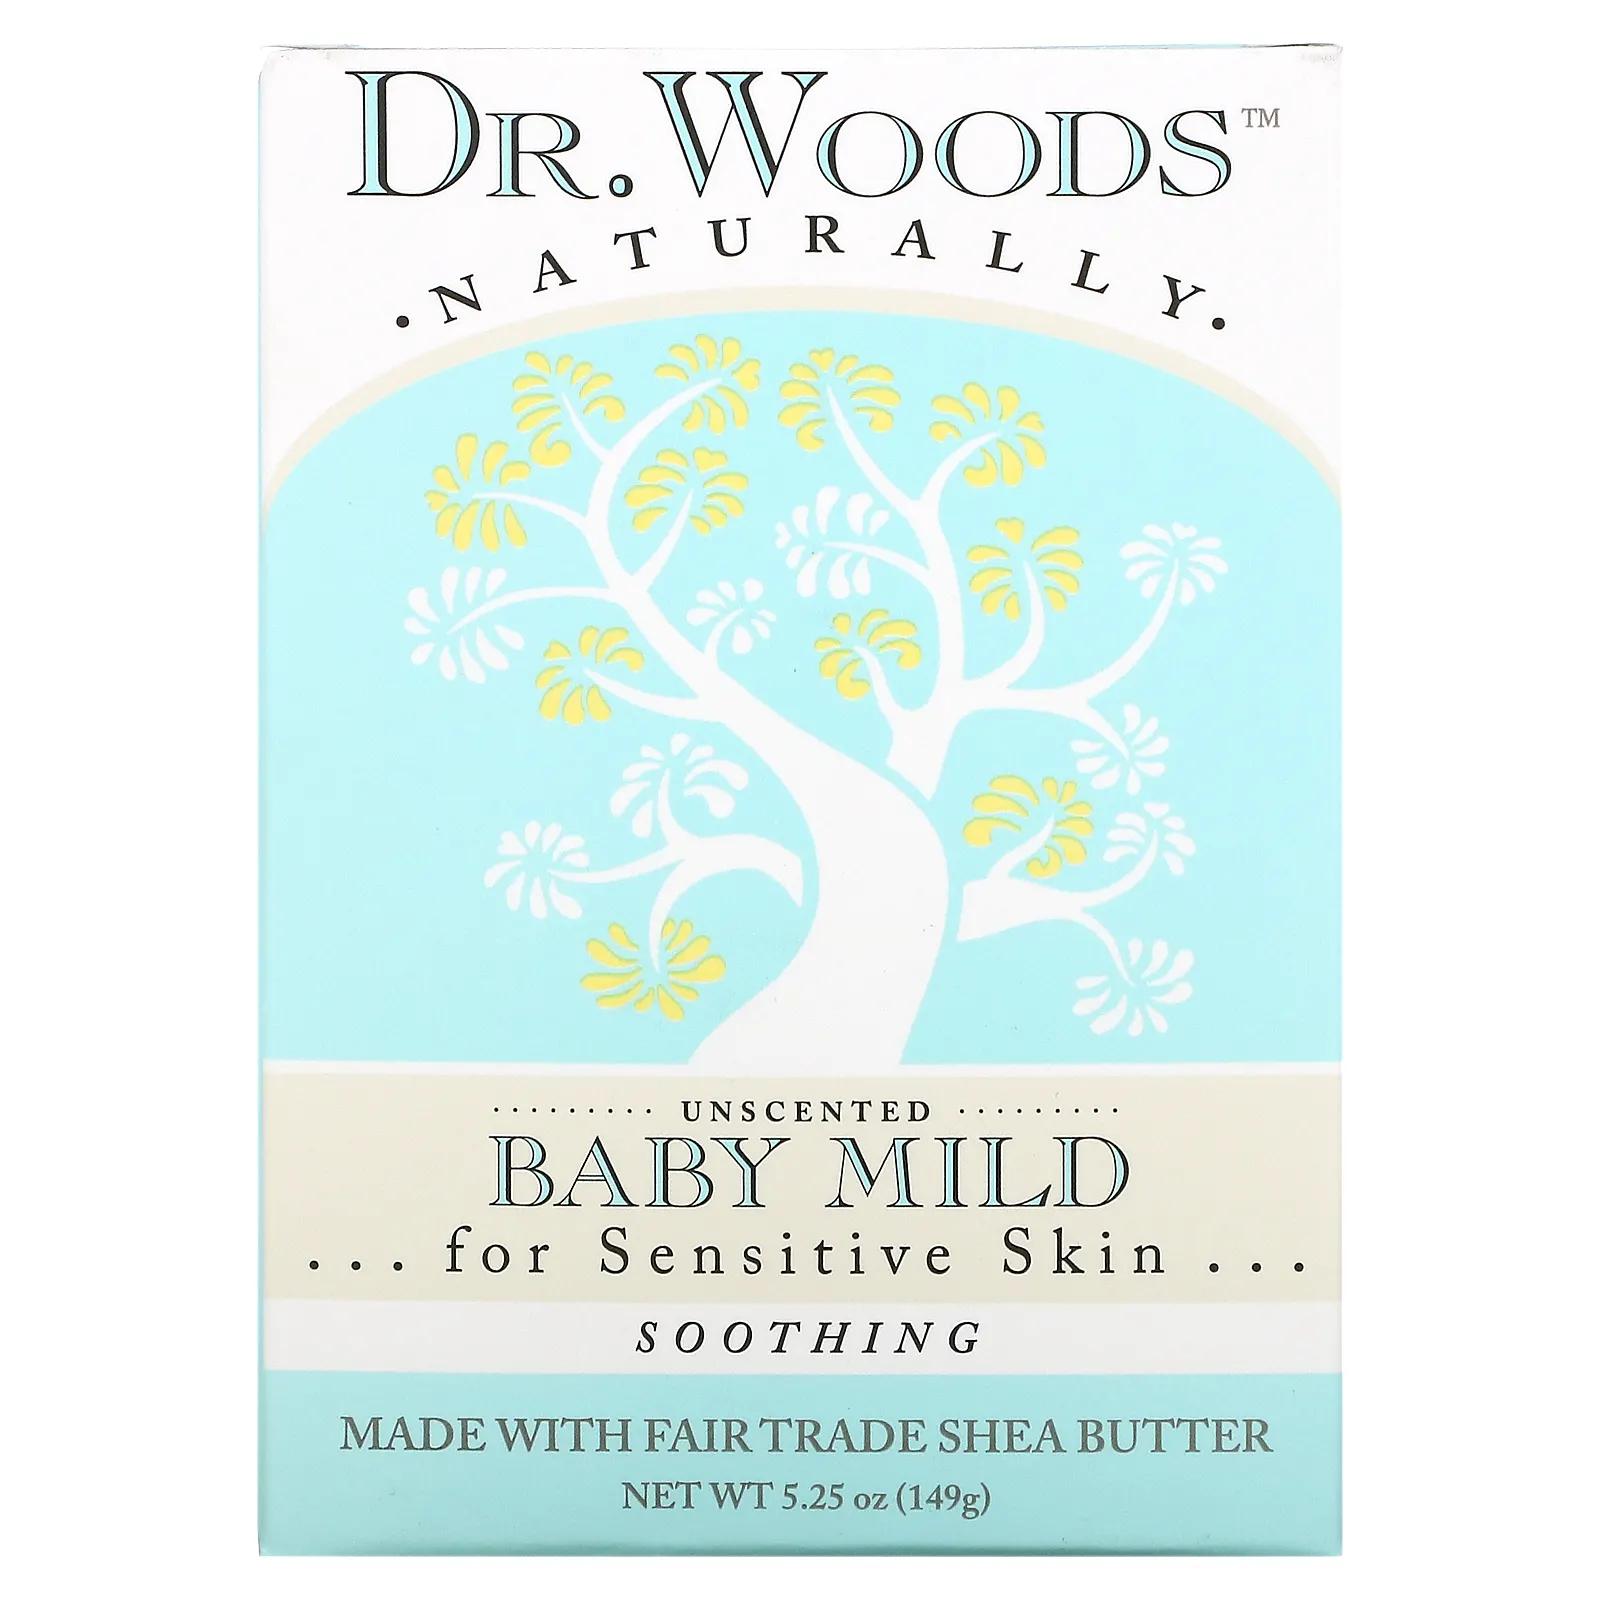 Dr. Woods Детское мягкое кастильское мыло без отдушек 5,25 унций (149 г) dr woods английское мыло с ароматом розы эффект осветления кожи 149 г 5 25 унции